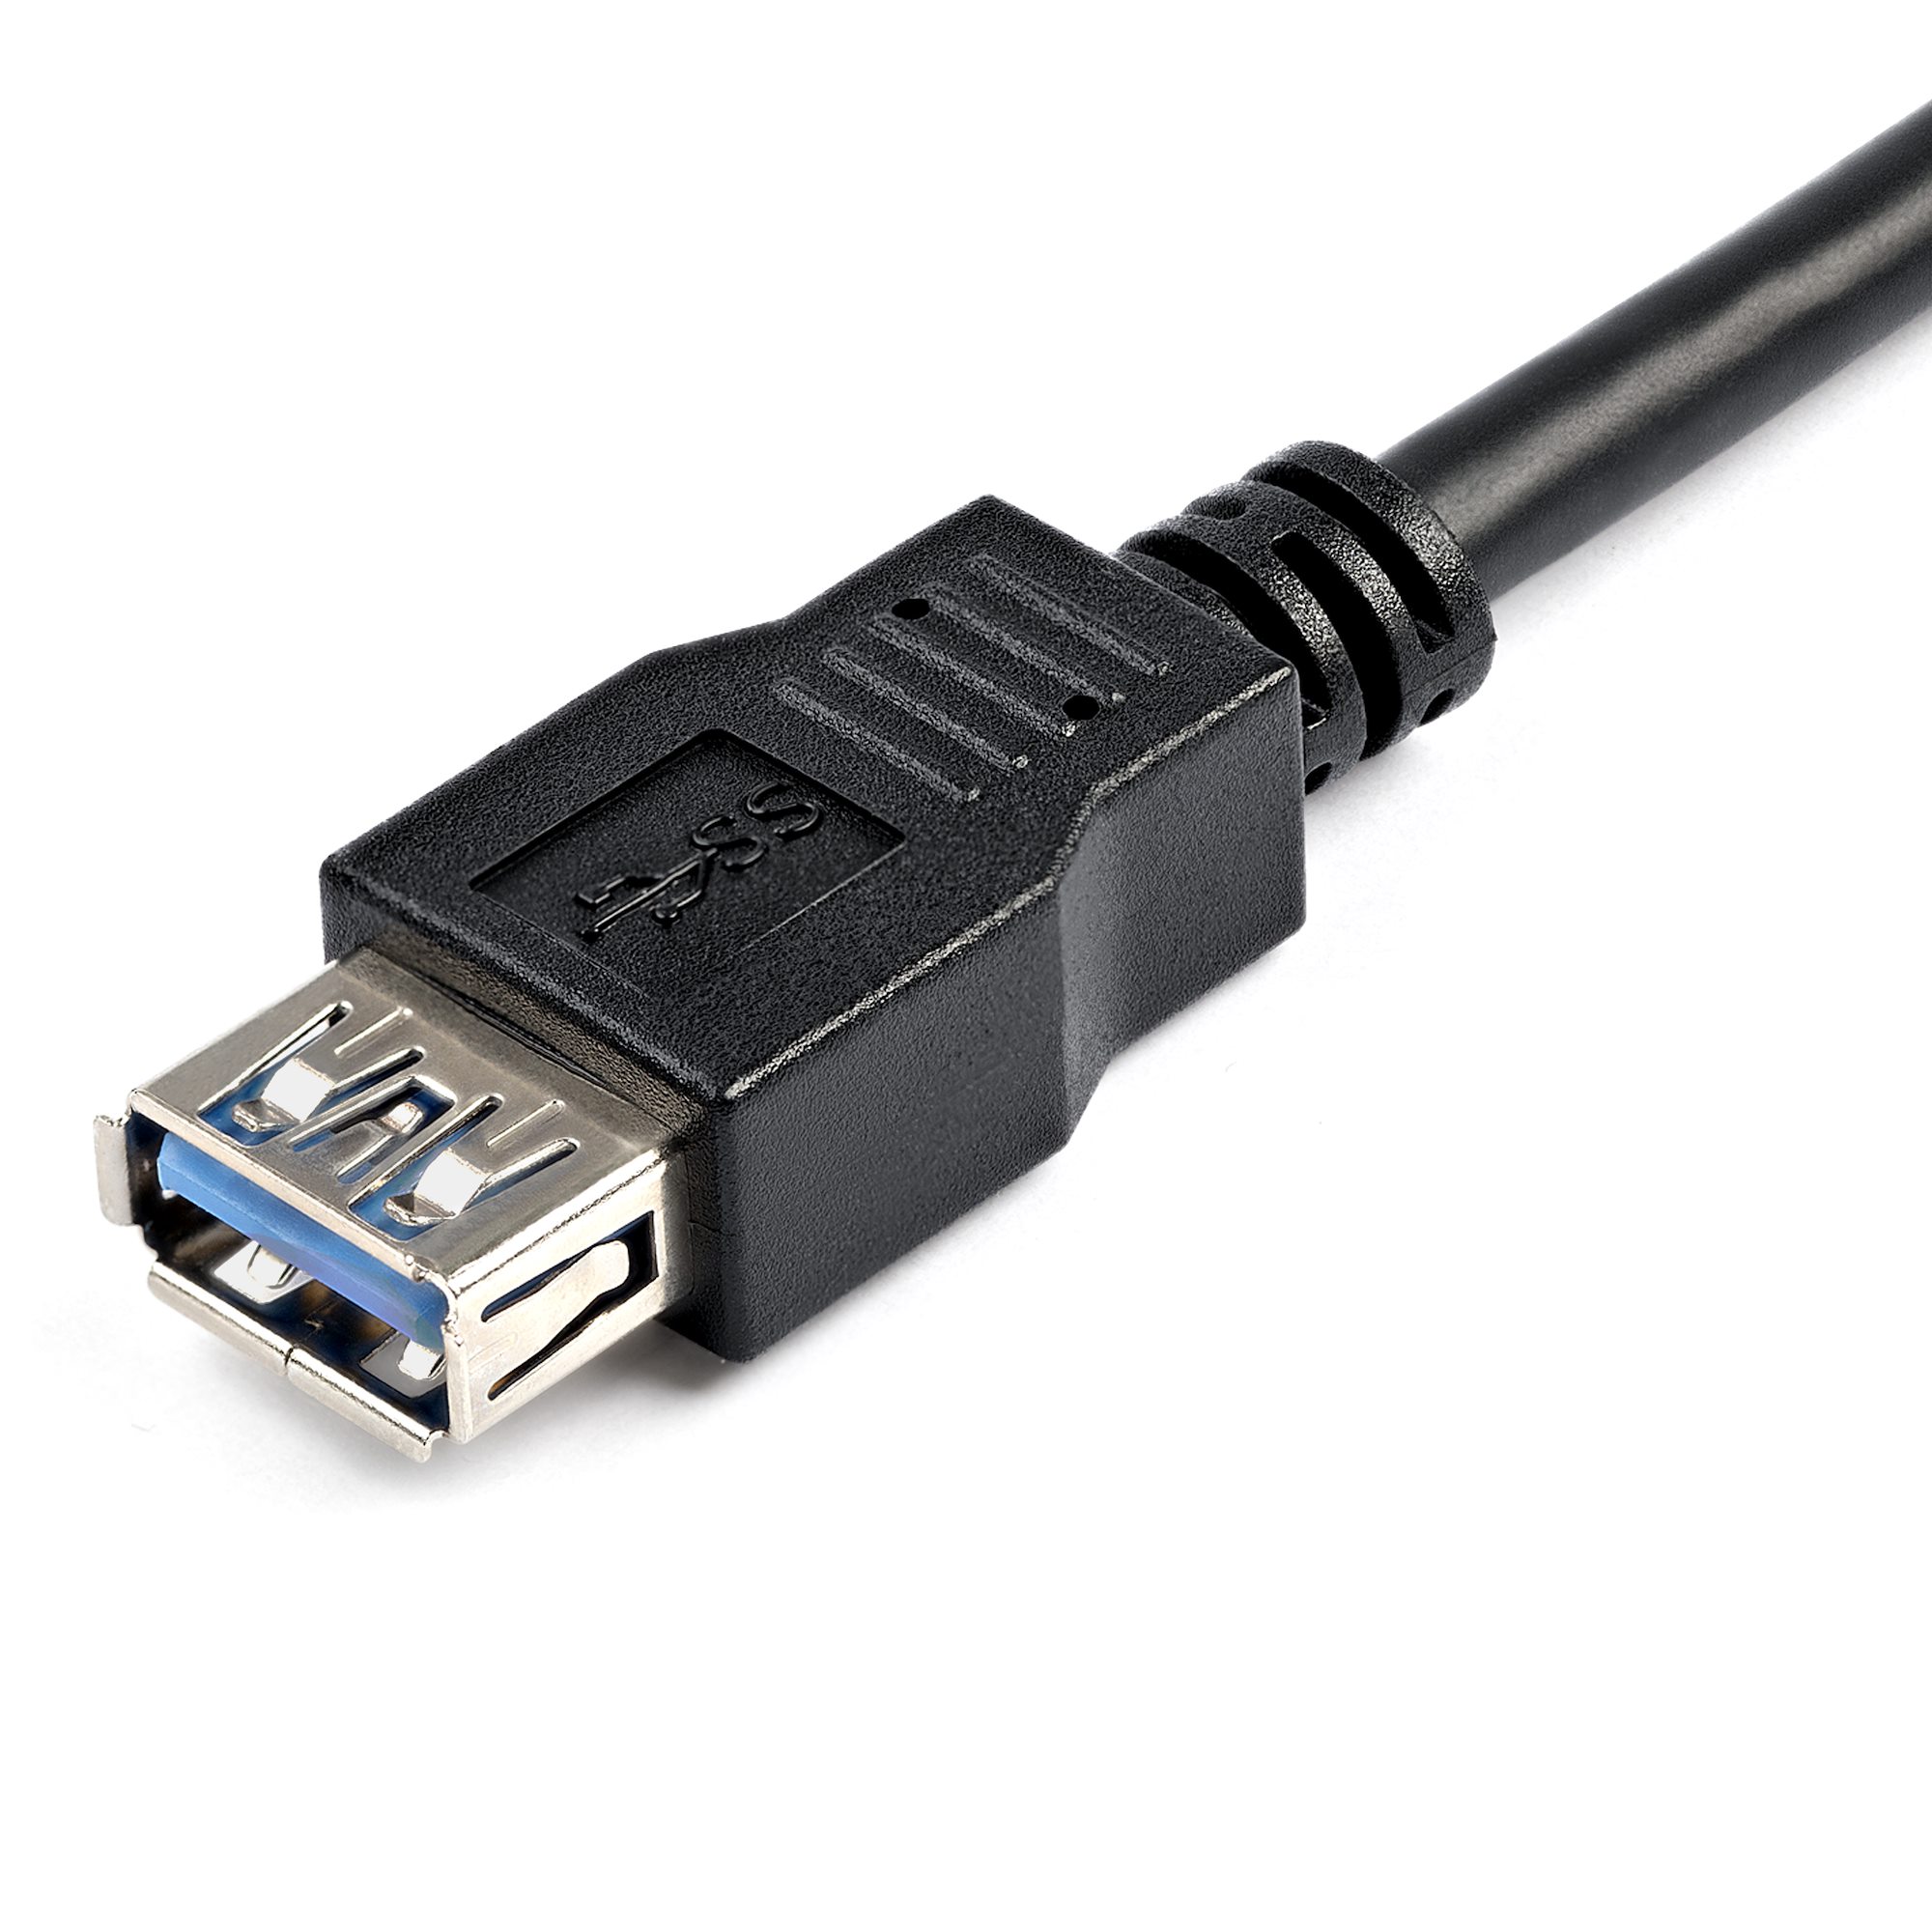 CABLE USB 3.0 ALARGADOR AM/AH 1MTS